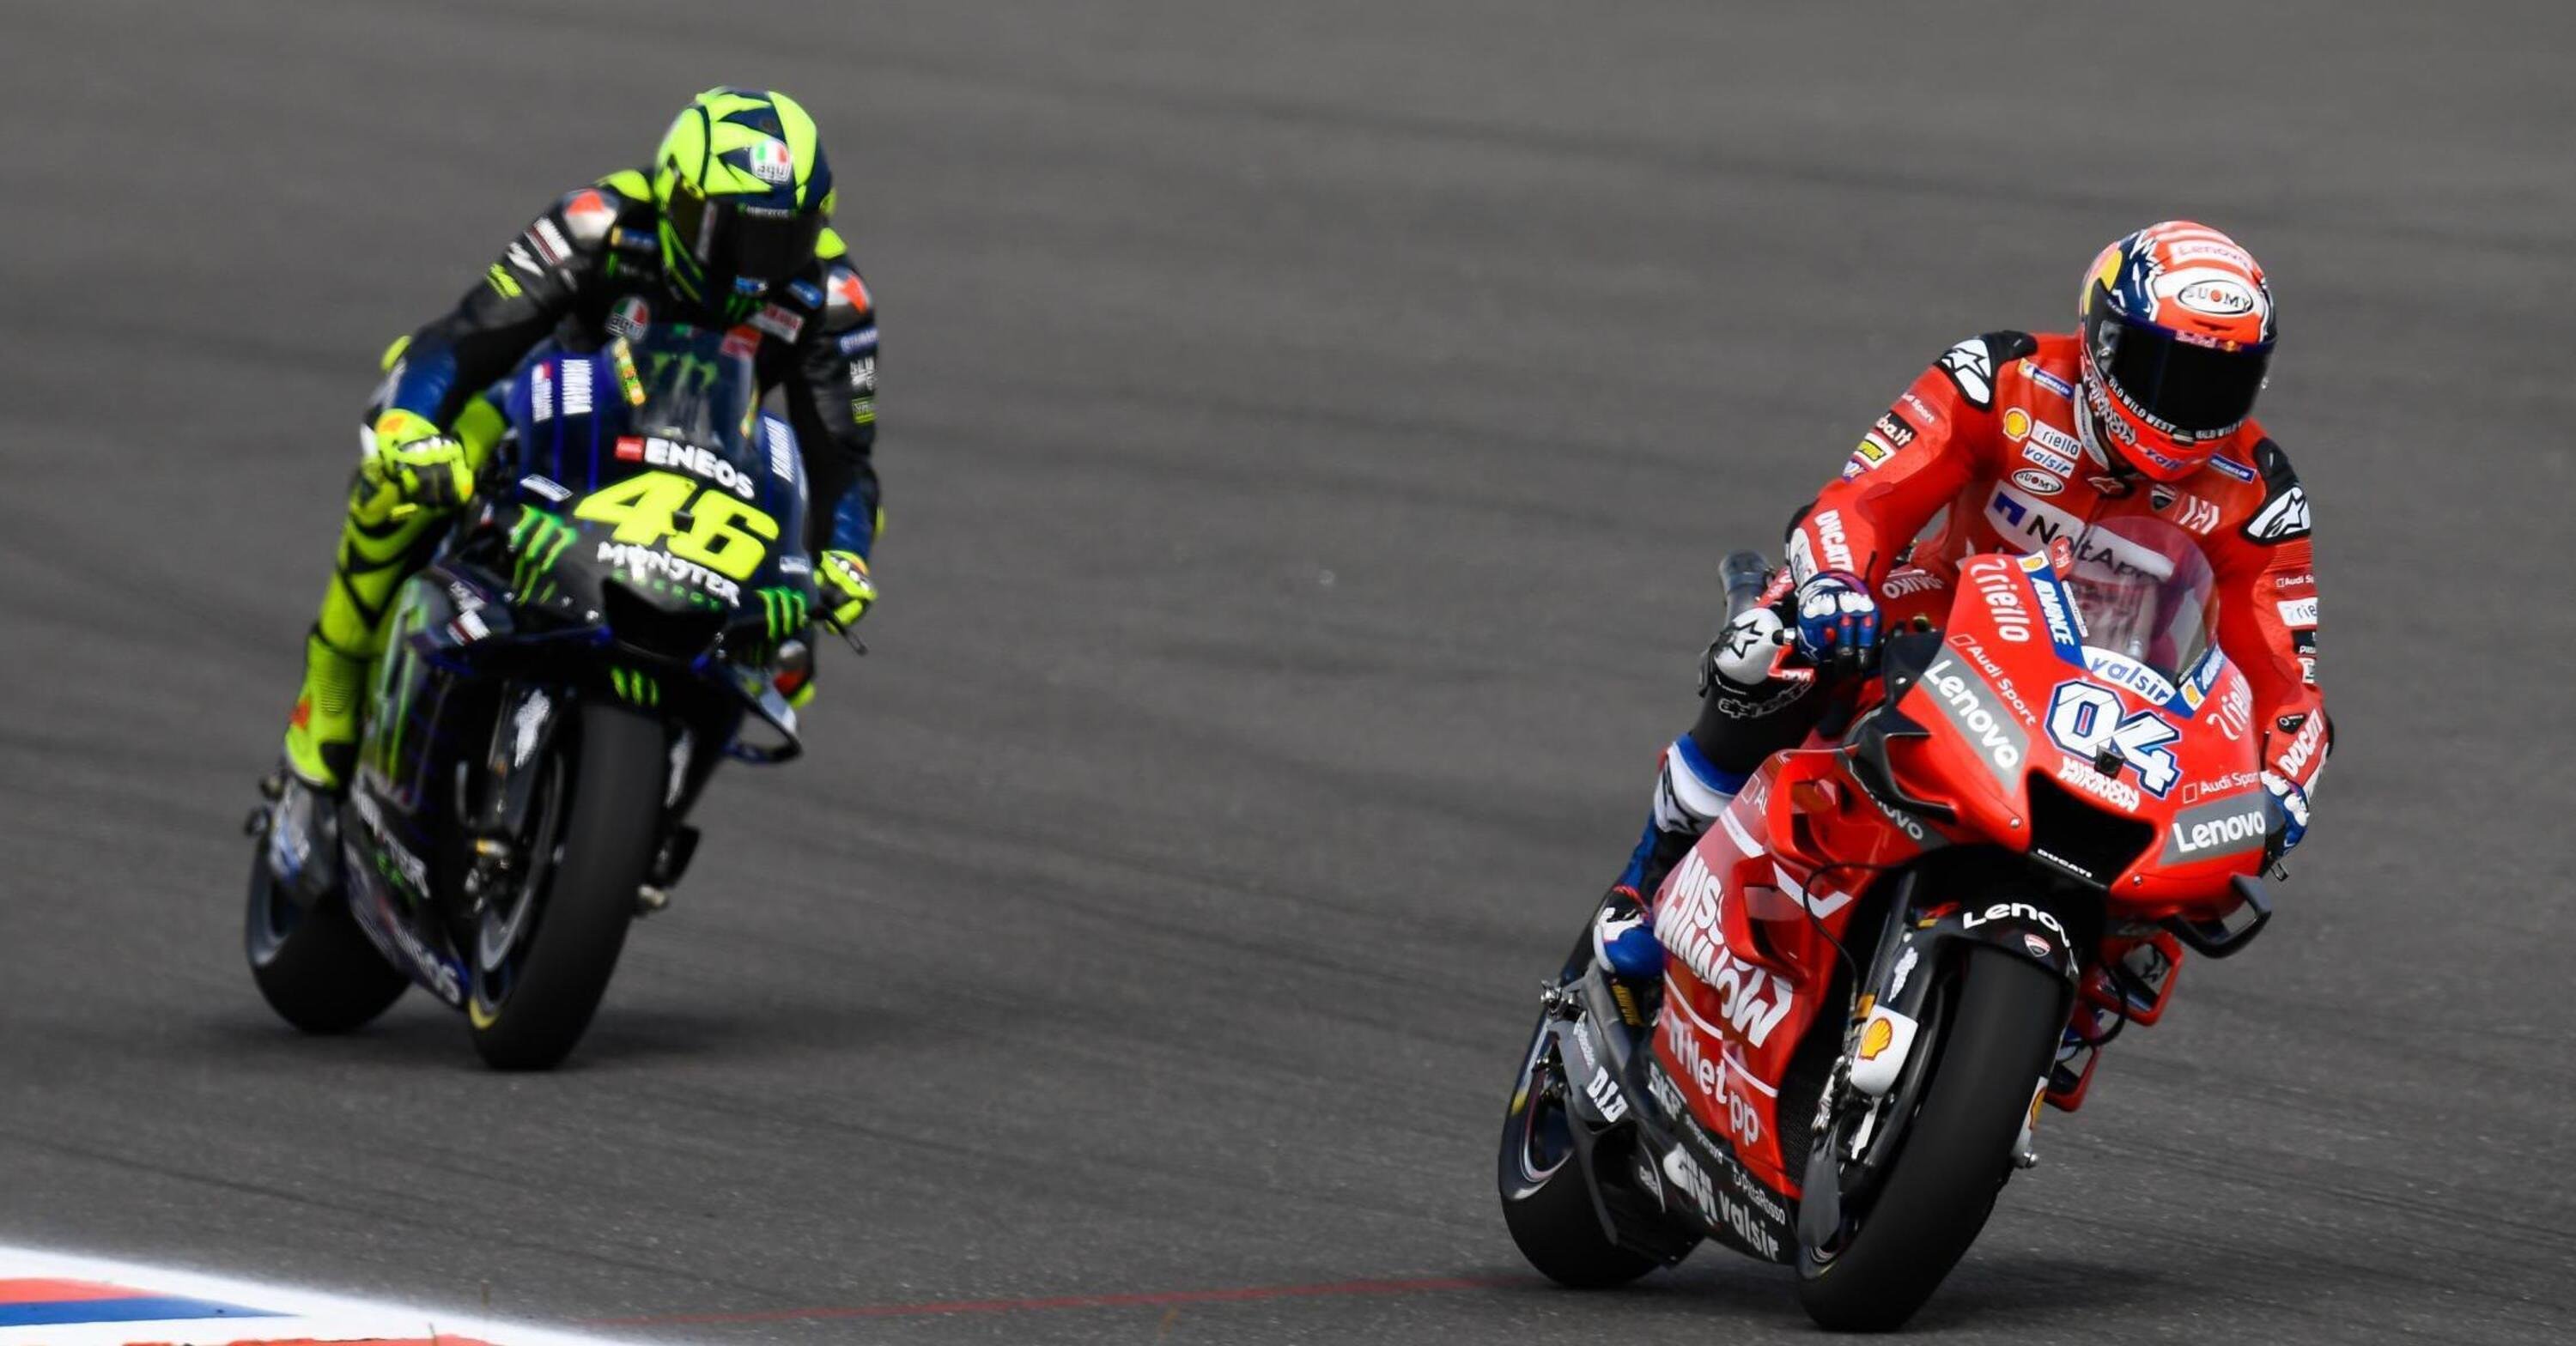 MotoGP: Valentino Rossi e Andrea Dovizioso, e se smettessero entrambi?